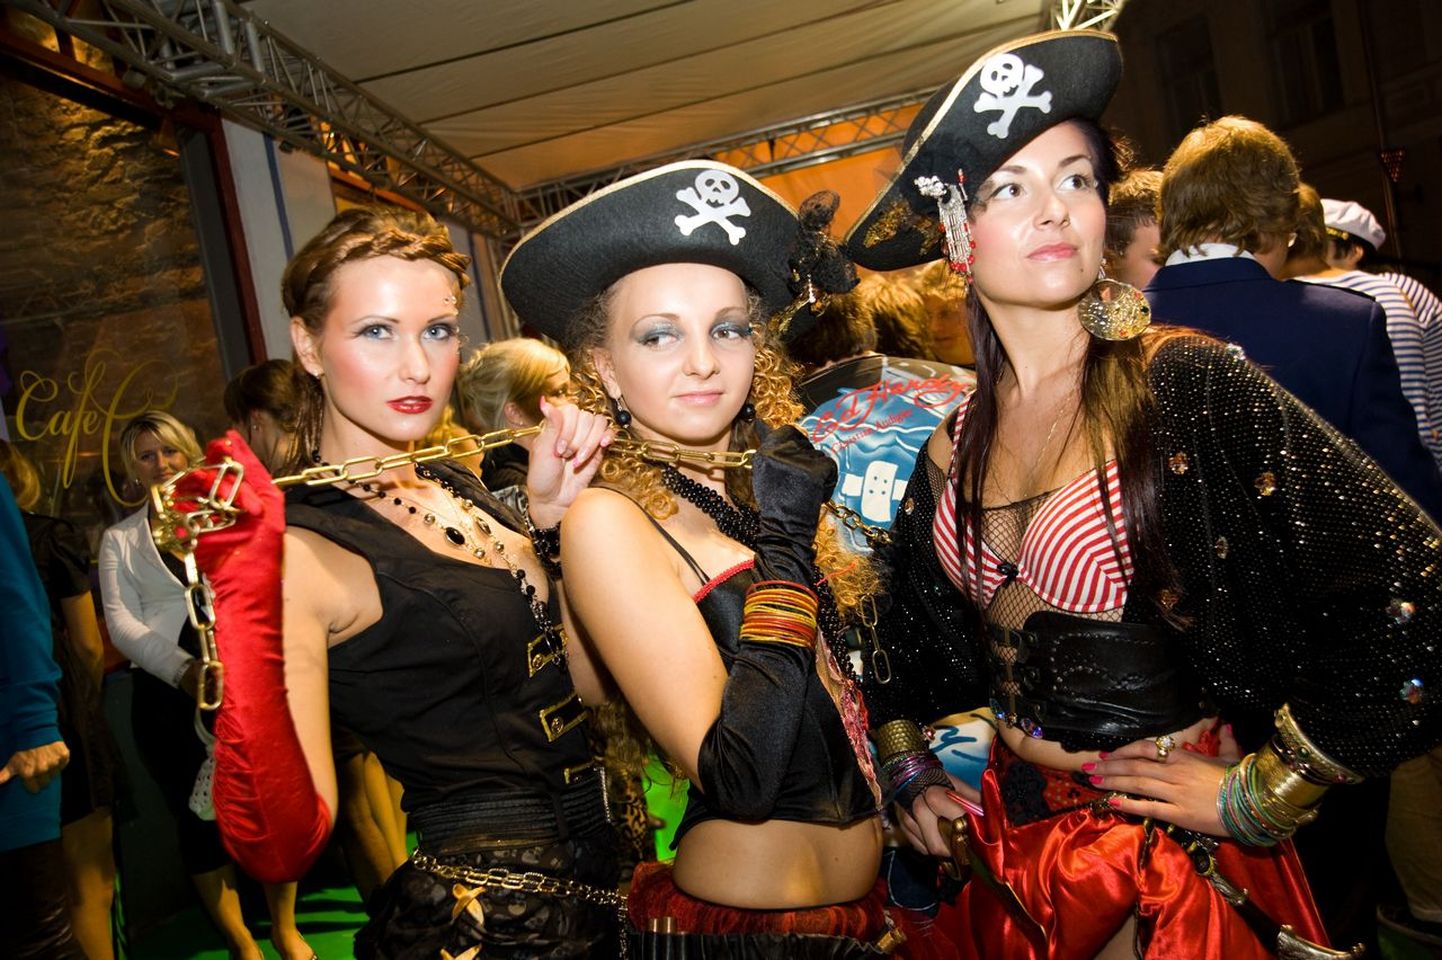 X.O. Club Members Pirate Night.